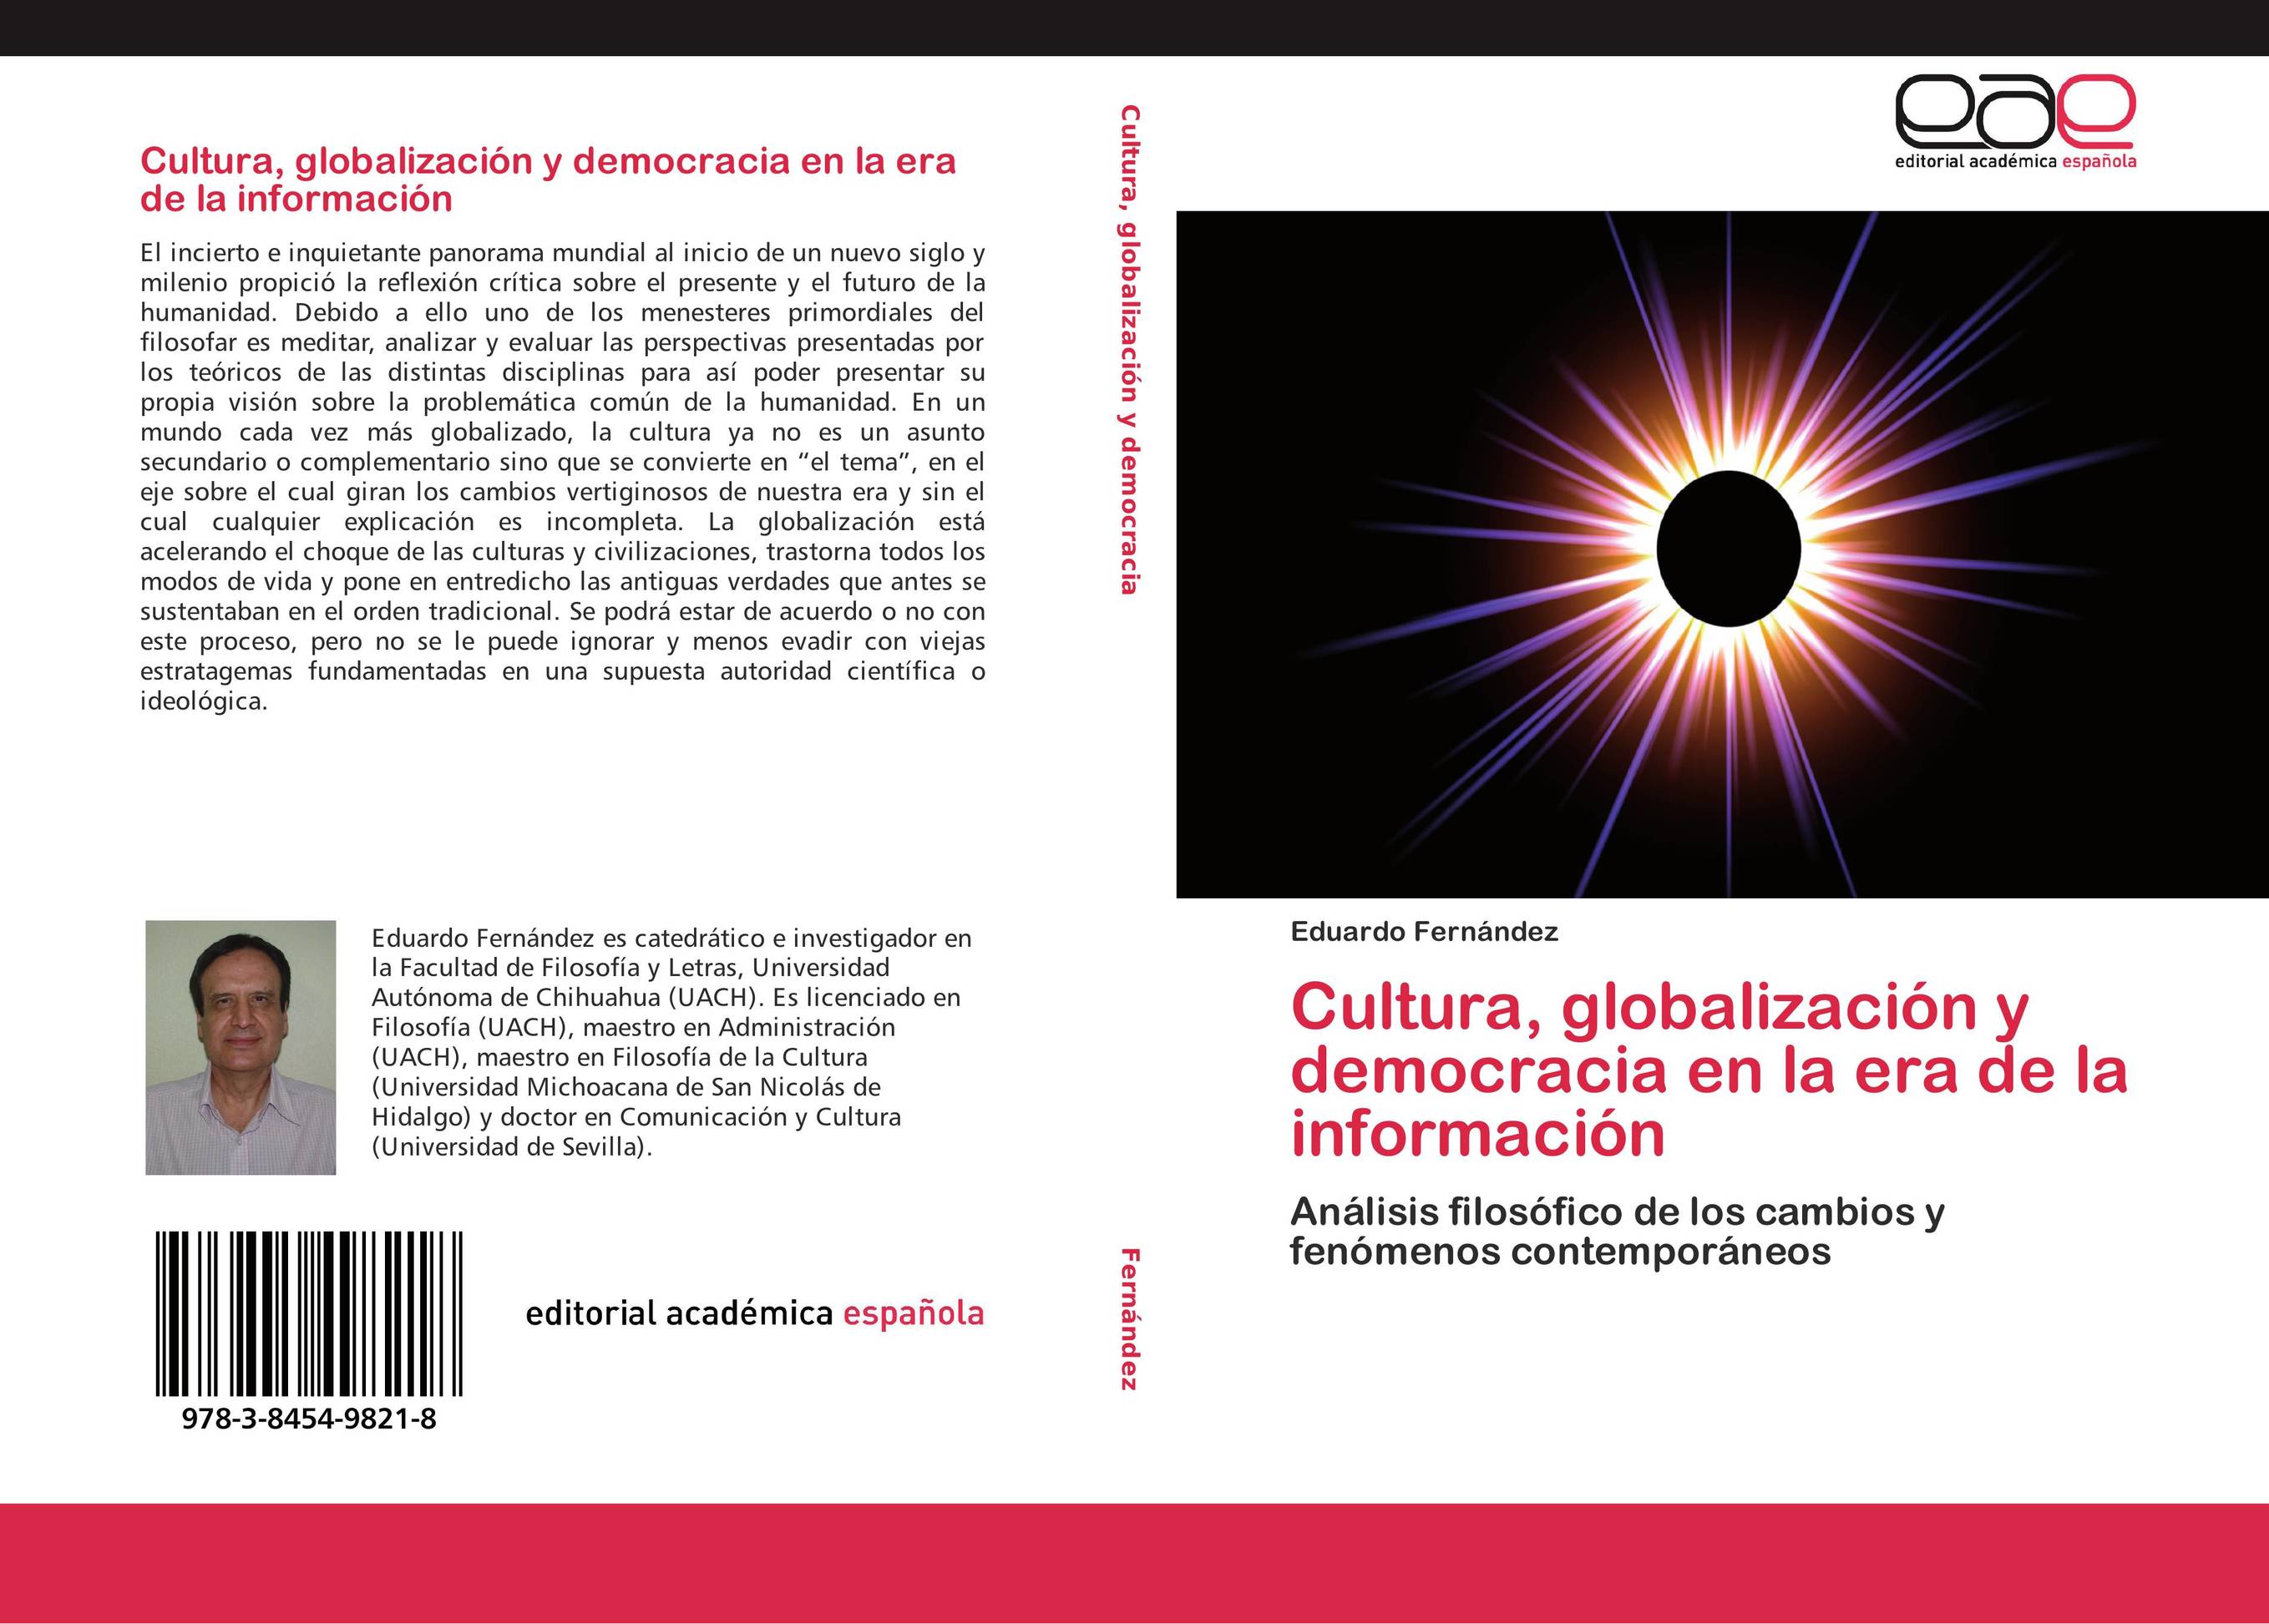 Cultura, globalización y democracia en la era de la información